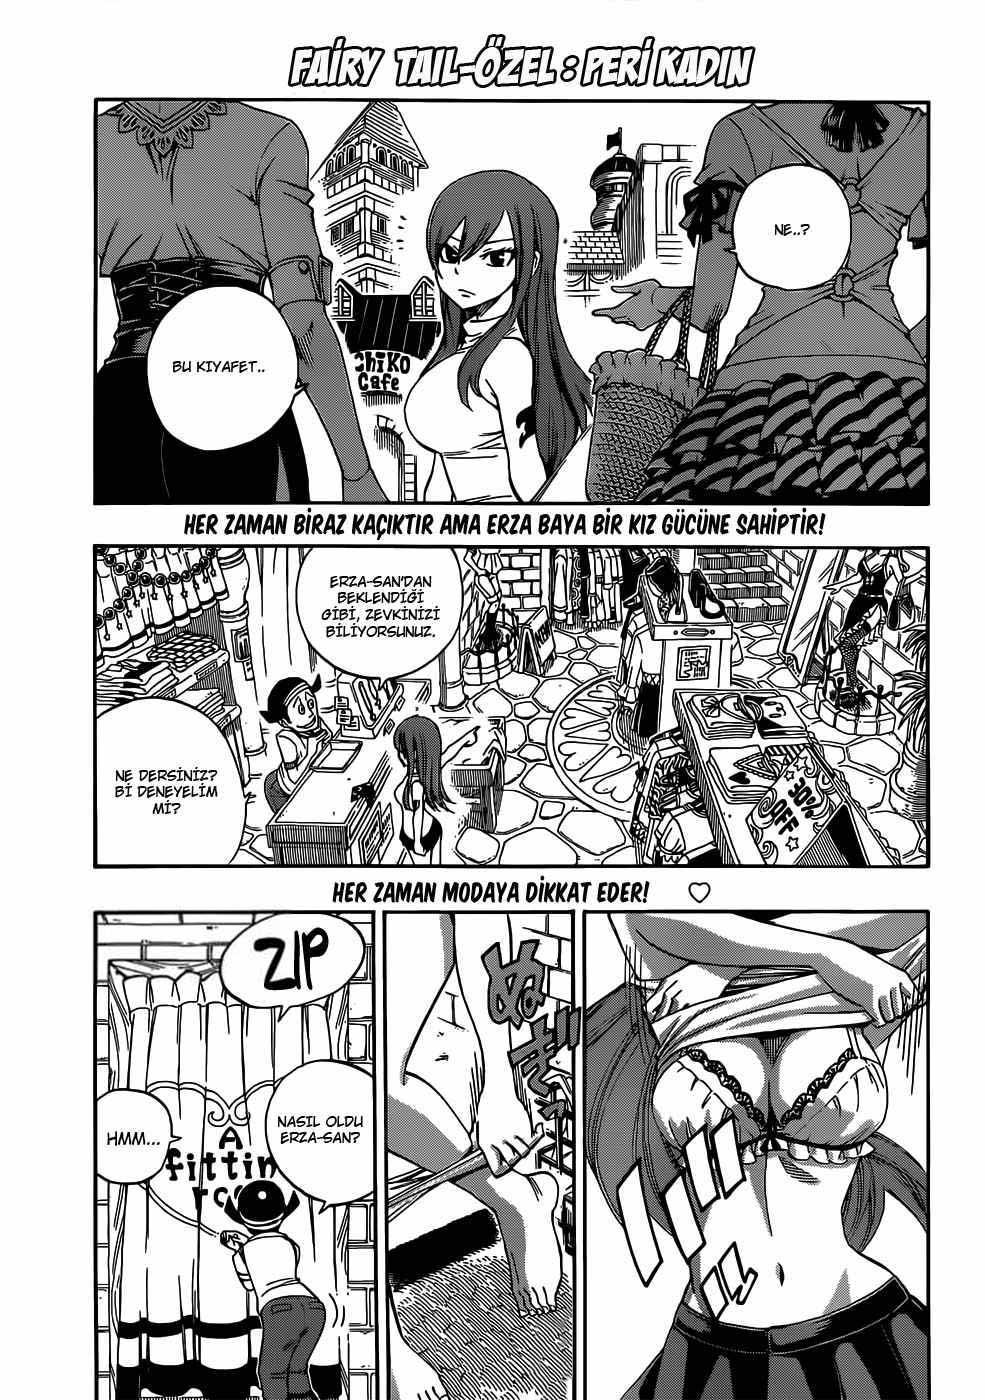 Fairy Tail: Omake mangasının 02 bölümünün 2. sayfasını okuyorsunuz.